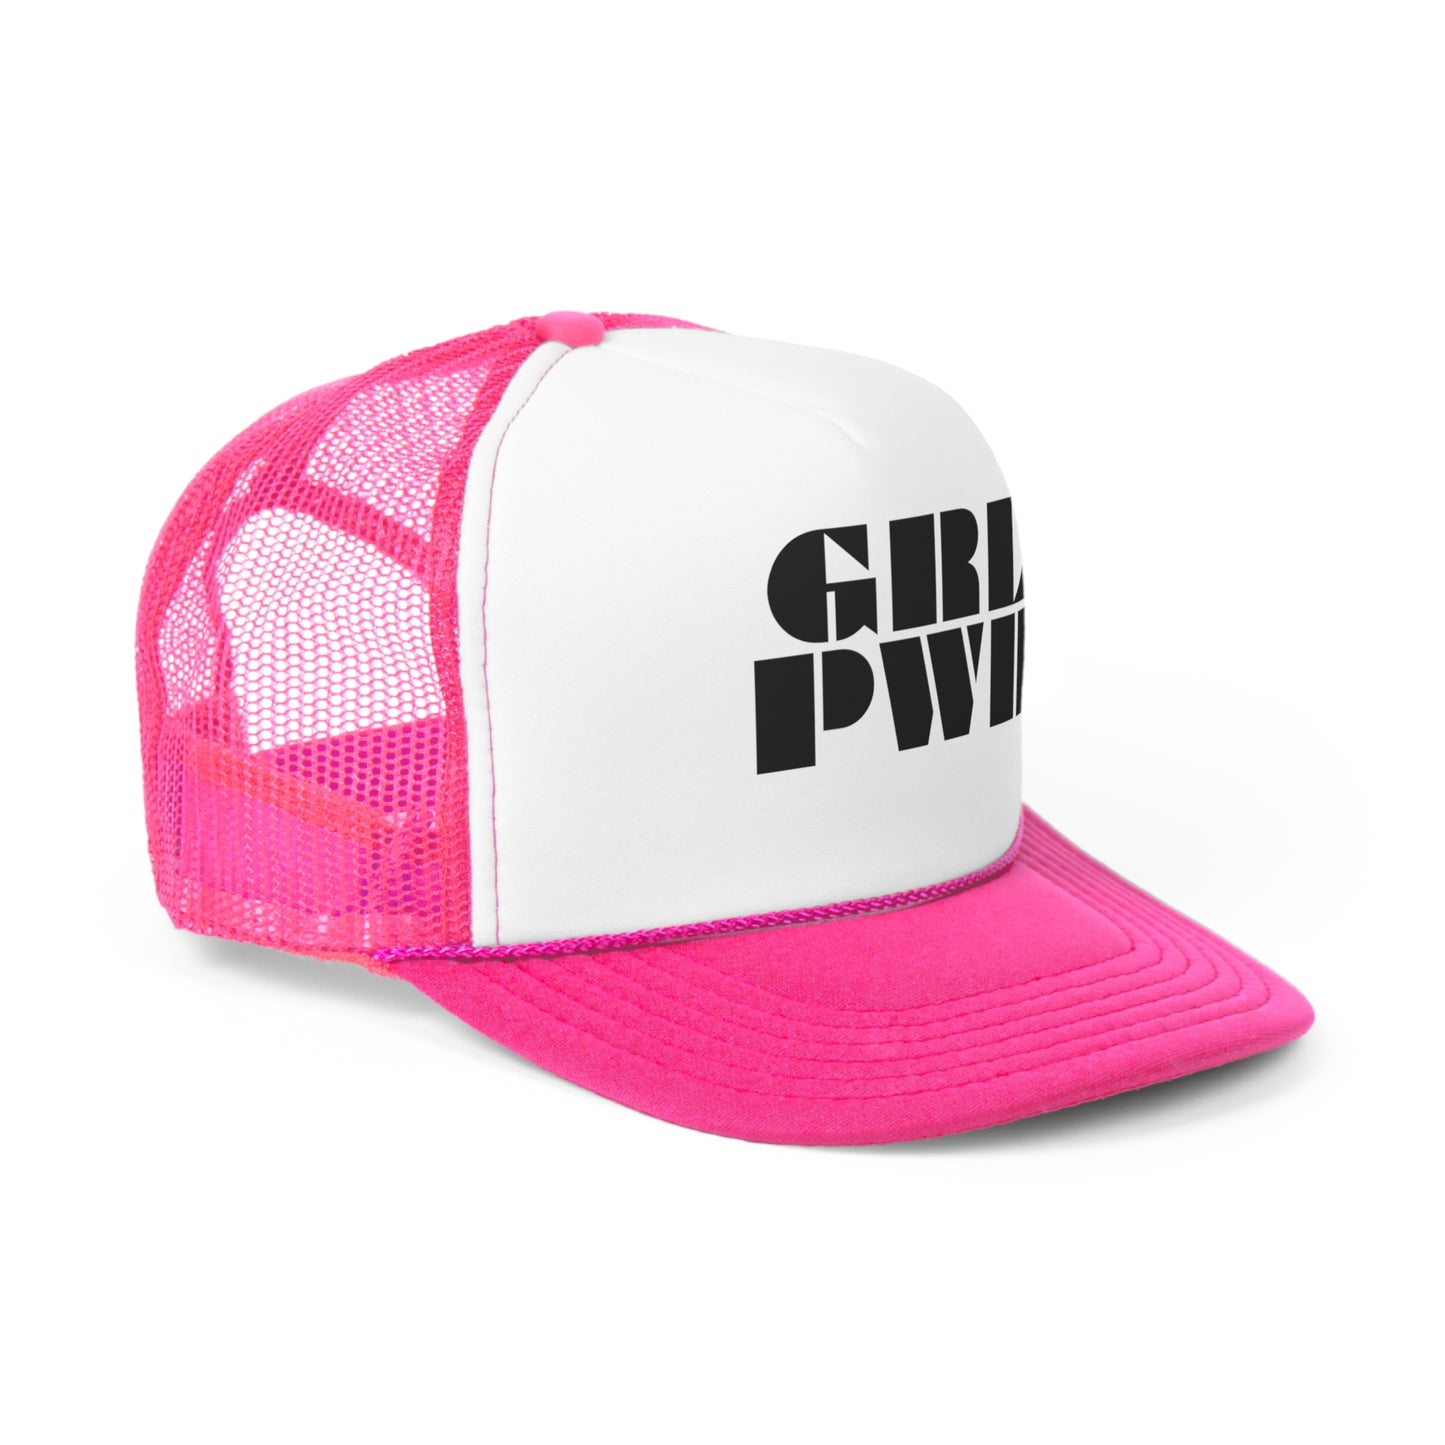 Grl Pwr Trucker Hat- Girl Power